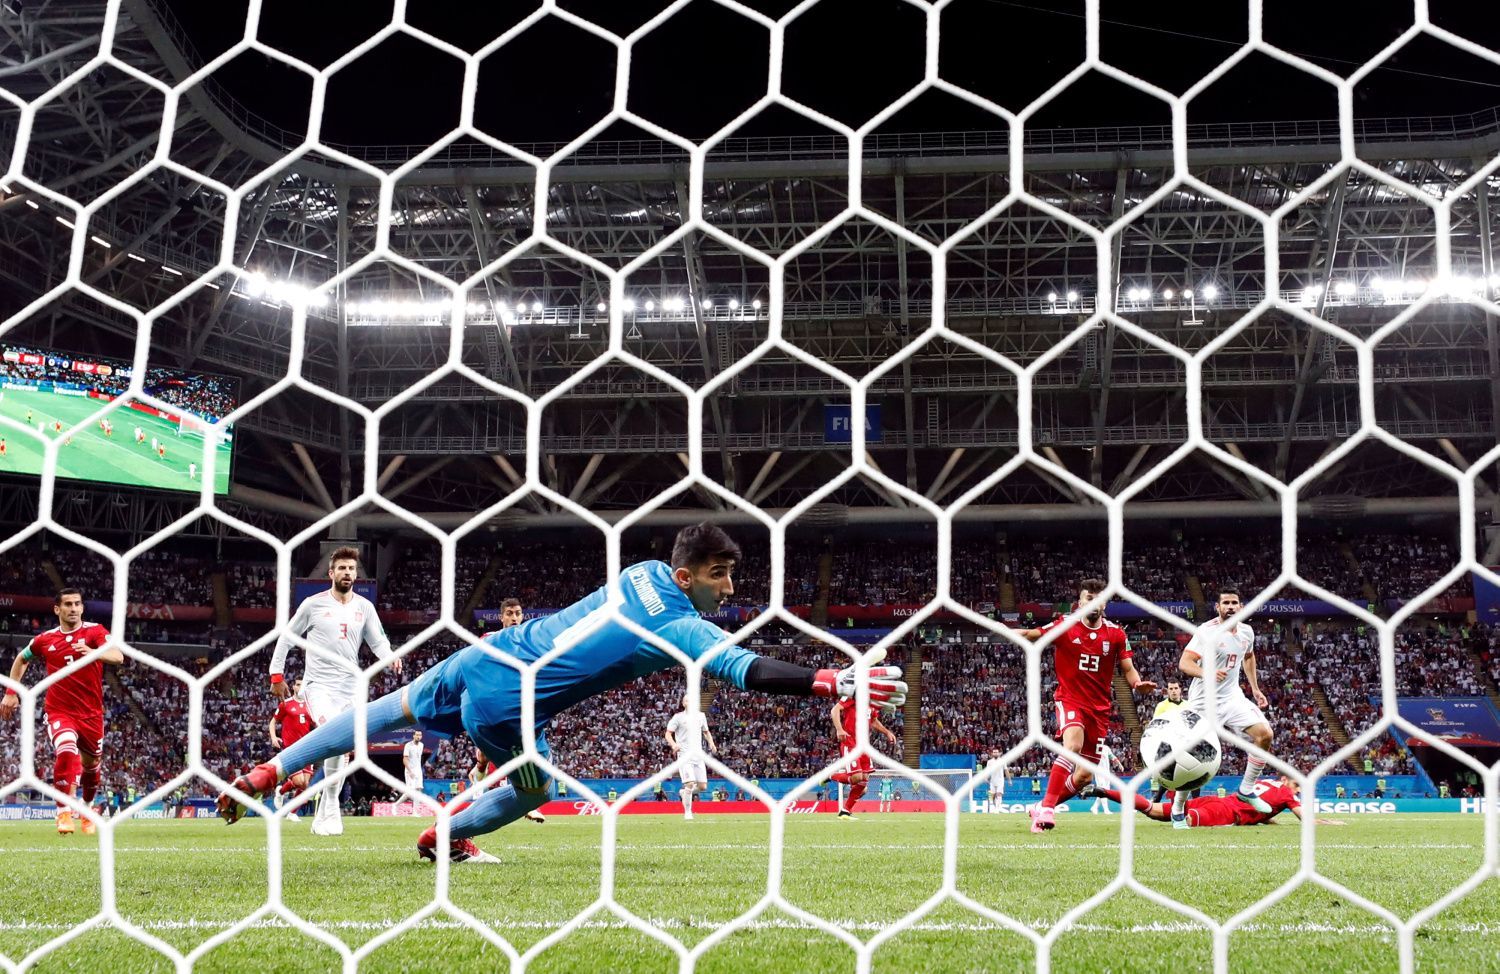 Diego Costa dává gól v zápase Írán - Španělsko na MS 2018